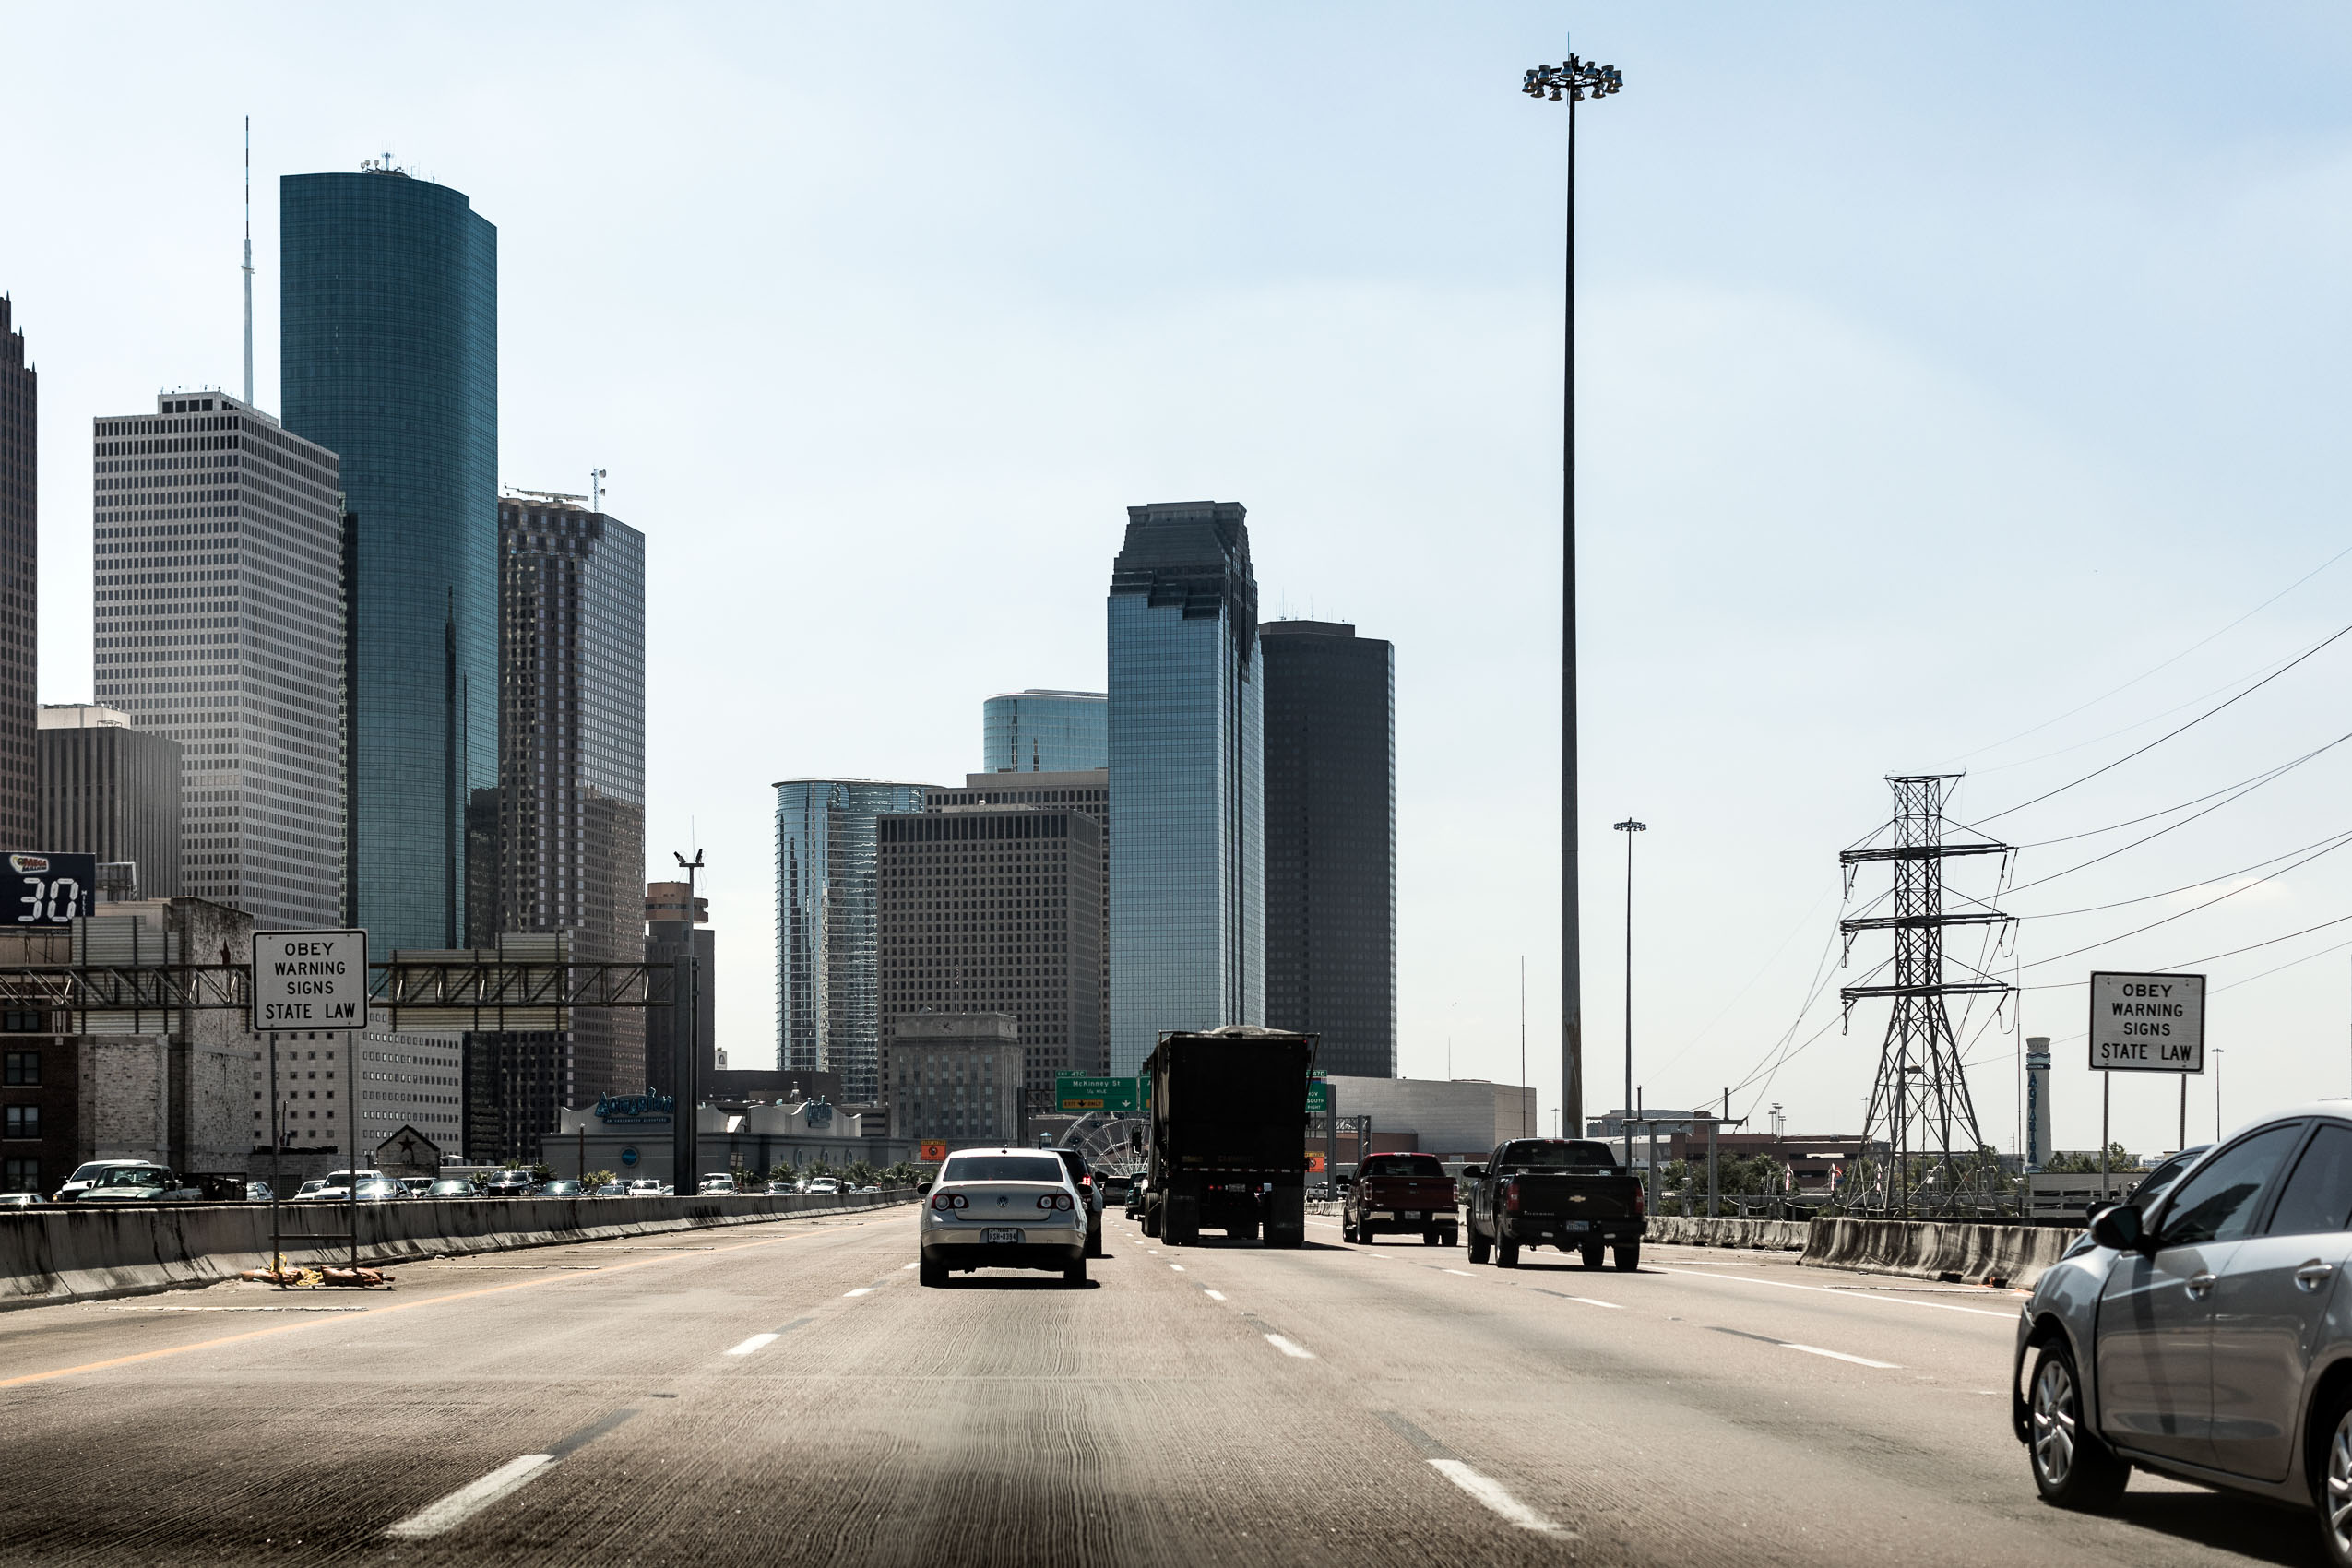 Houston. Treverity / Siemens - Next 47 | PATRICK STRATTNER PHOTOGRAPHY